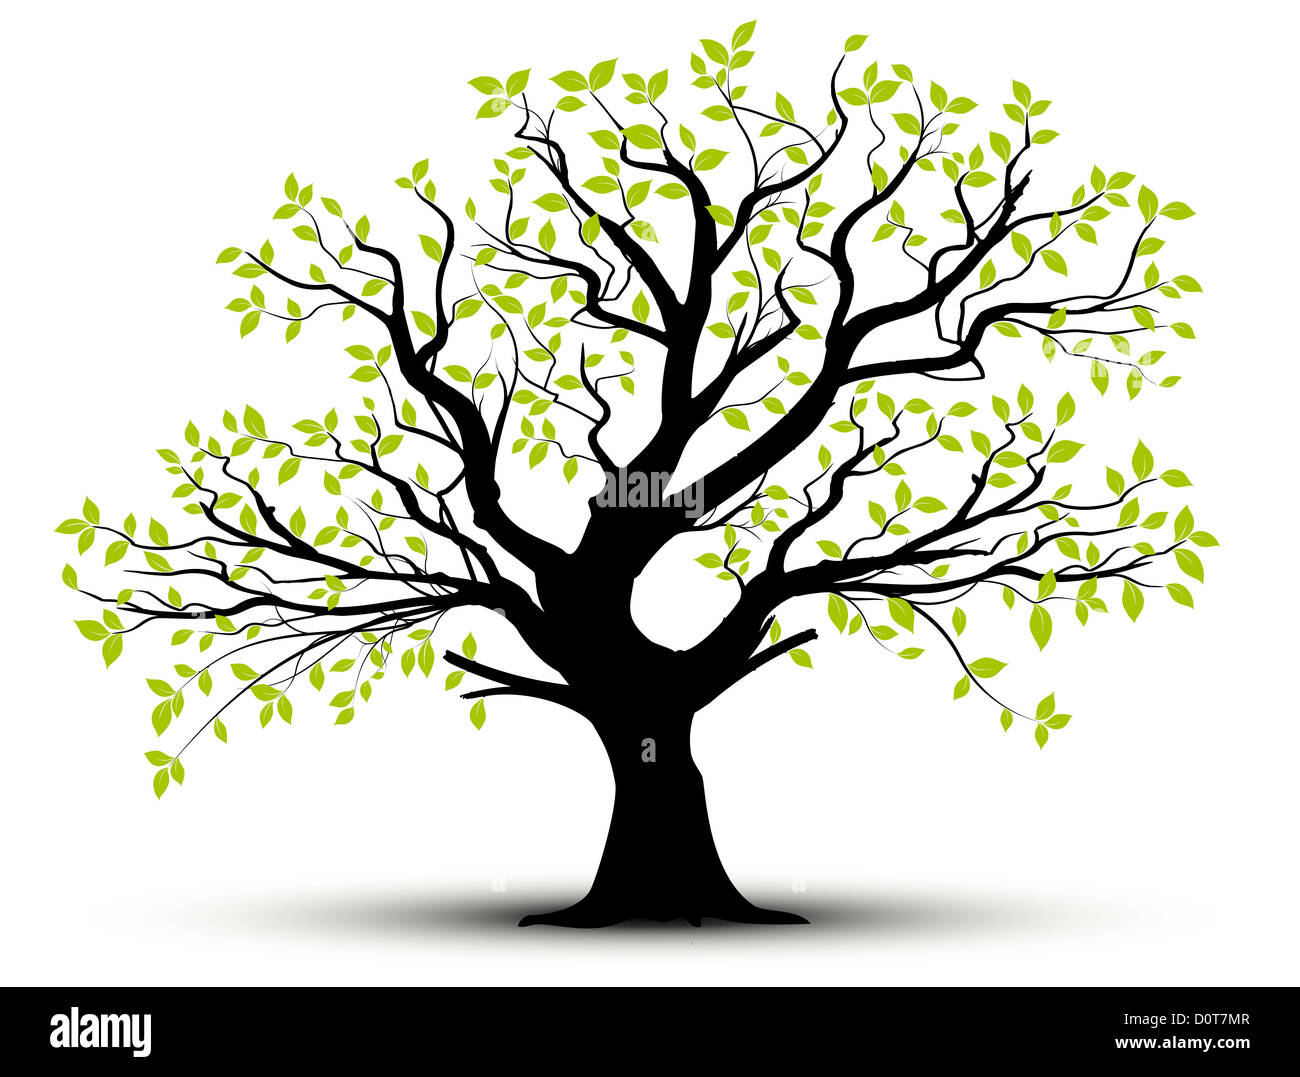 Illustration d'un arbre sur fond blanc, avec effet d'ombre, feuillage vert et noir trunk Banque D'Images